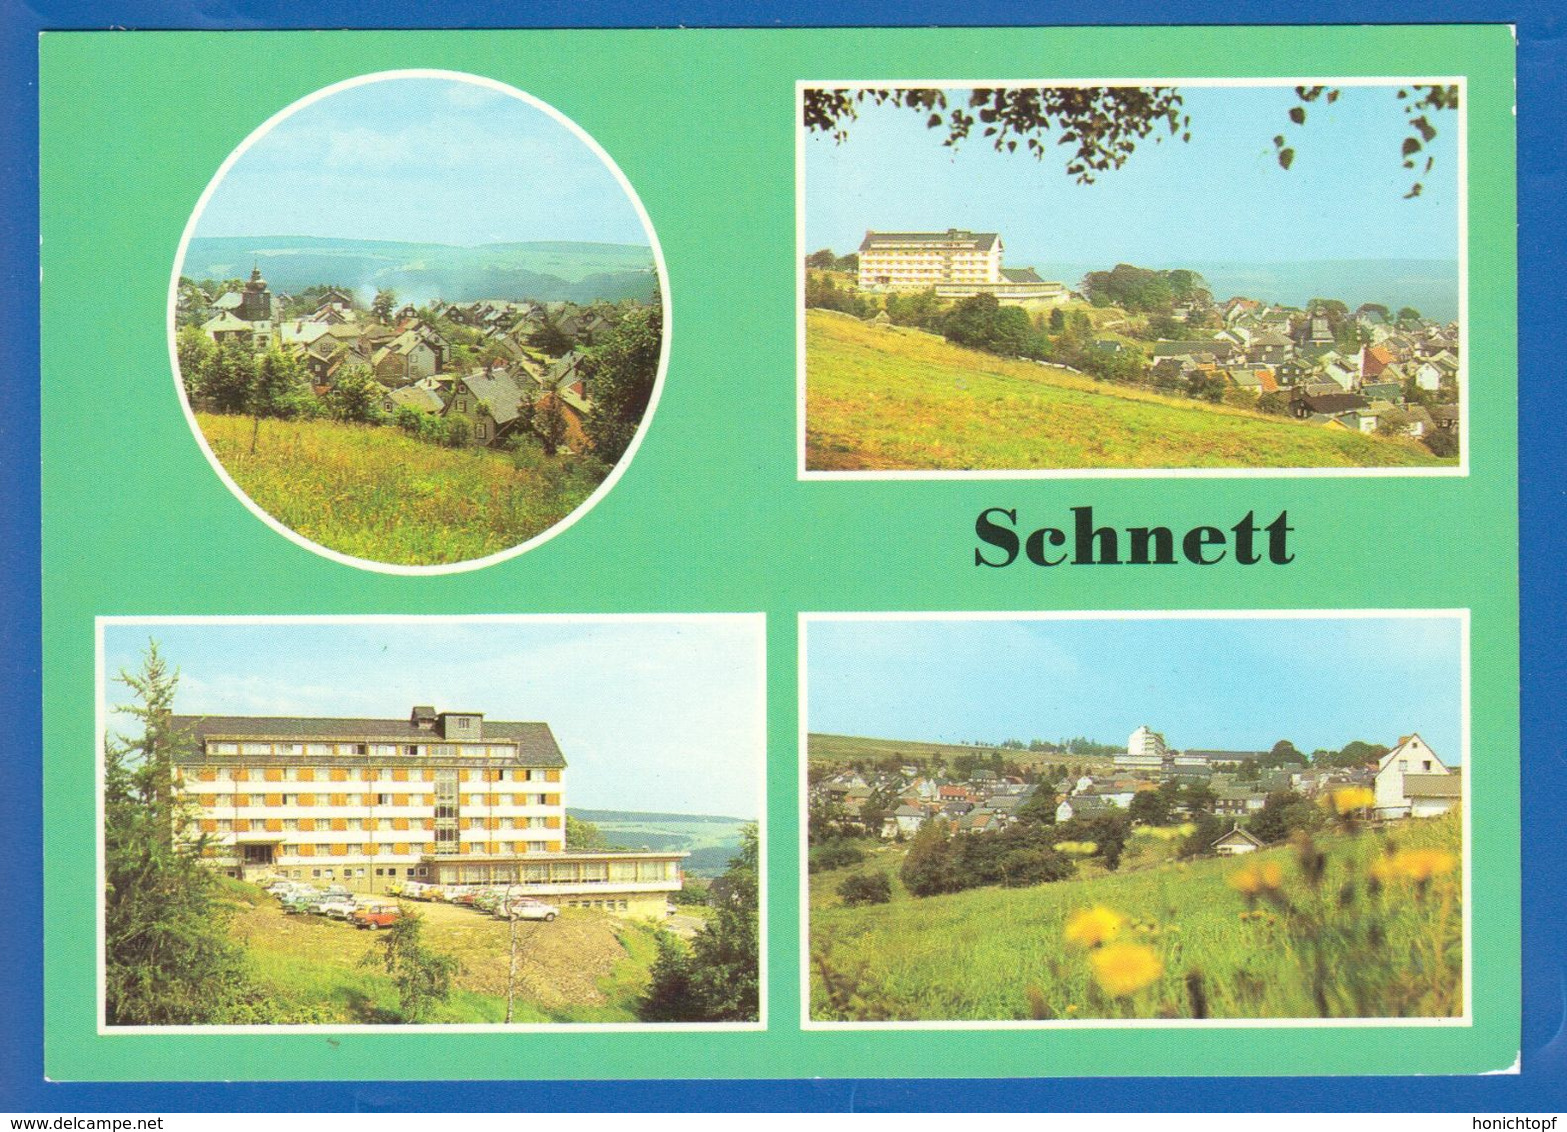 Deutschland; Masserberg, Schnett; Multibildkarte; Bild1 - Masserberg